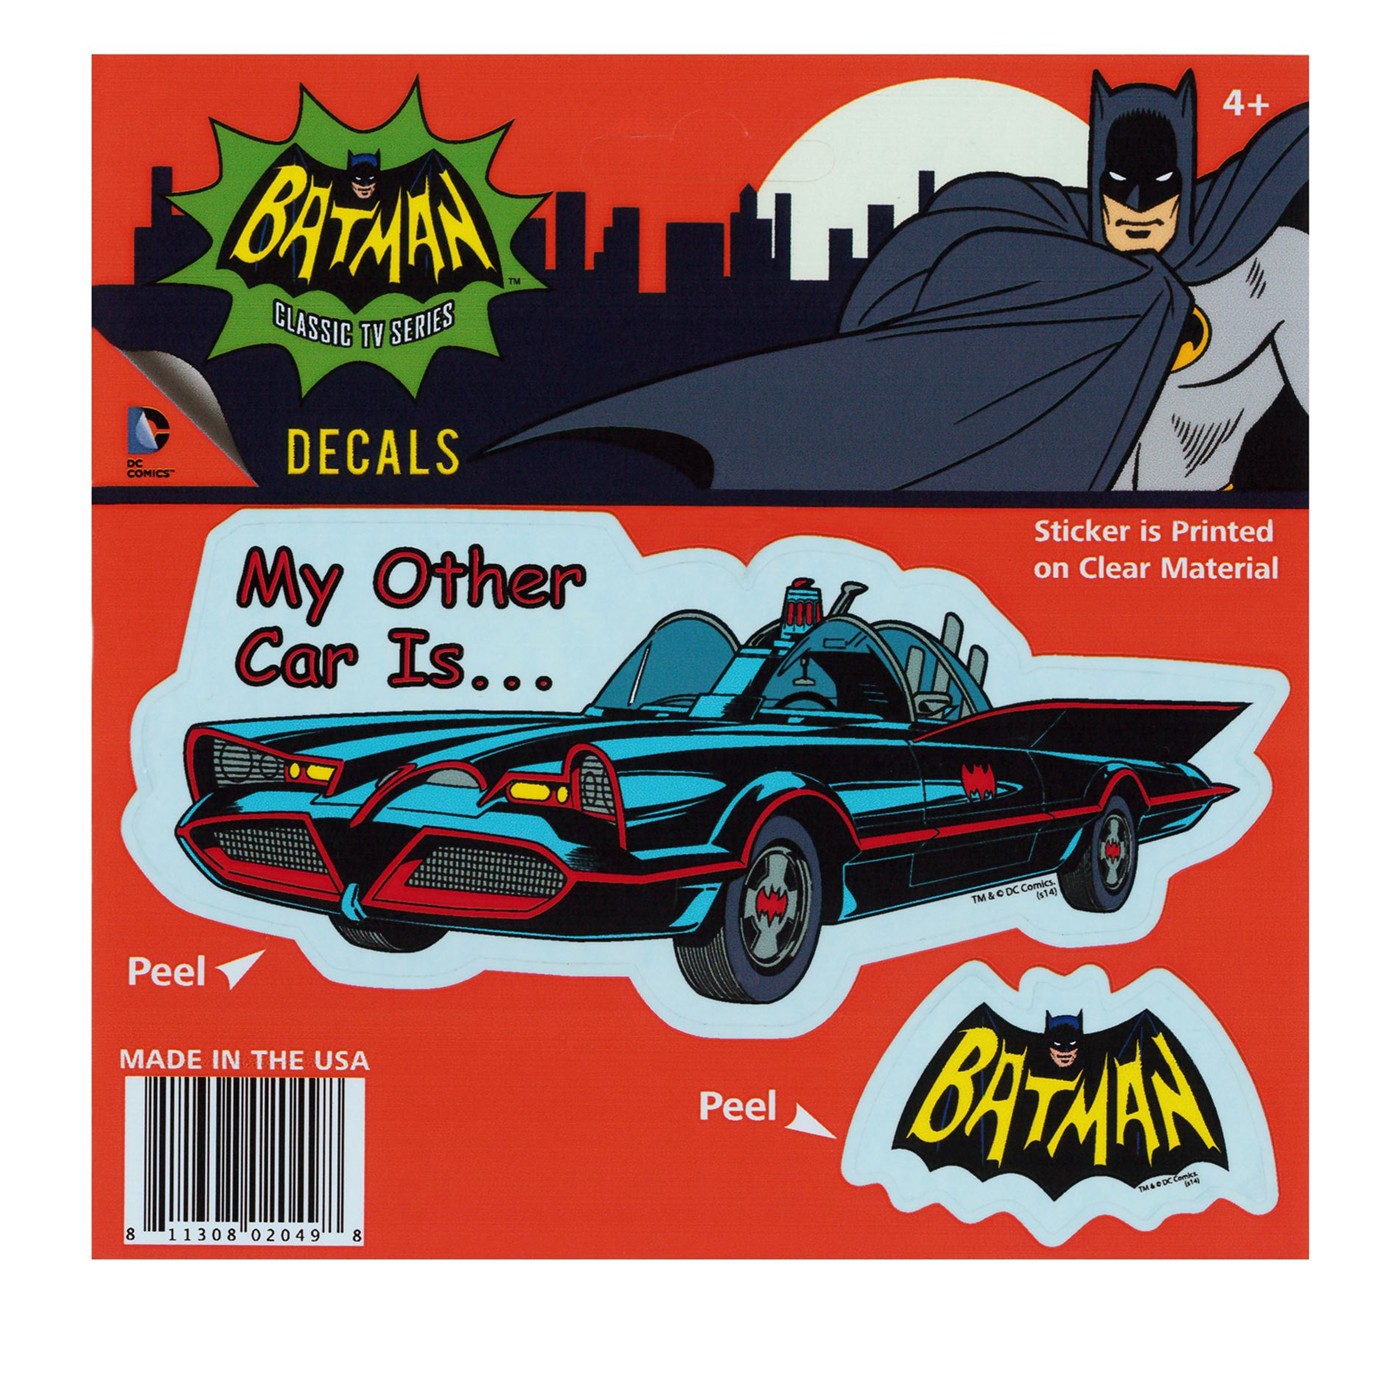 Batman 66 "My Other Car" Decal